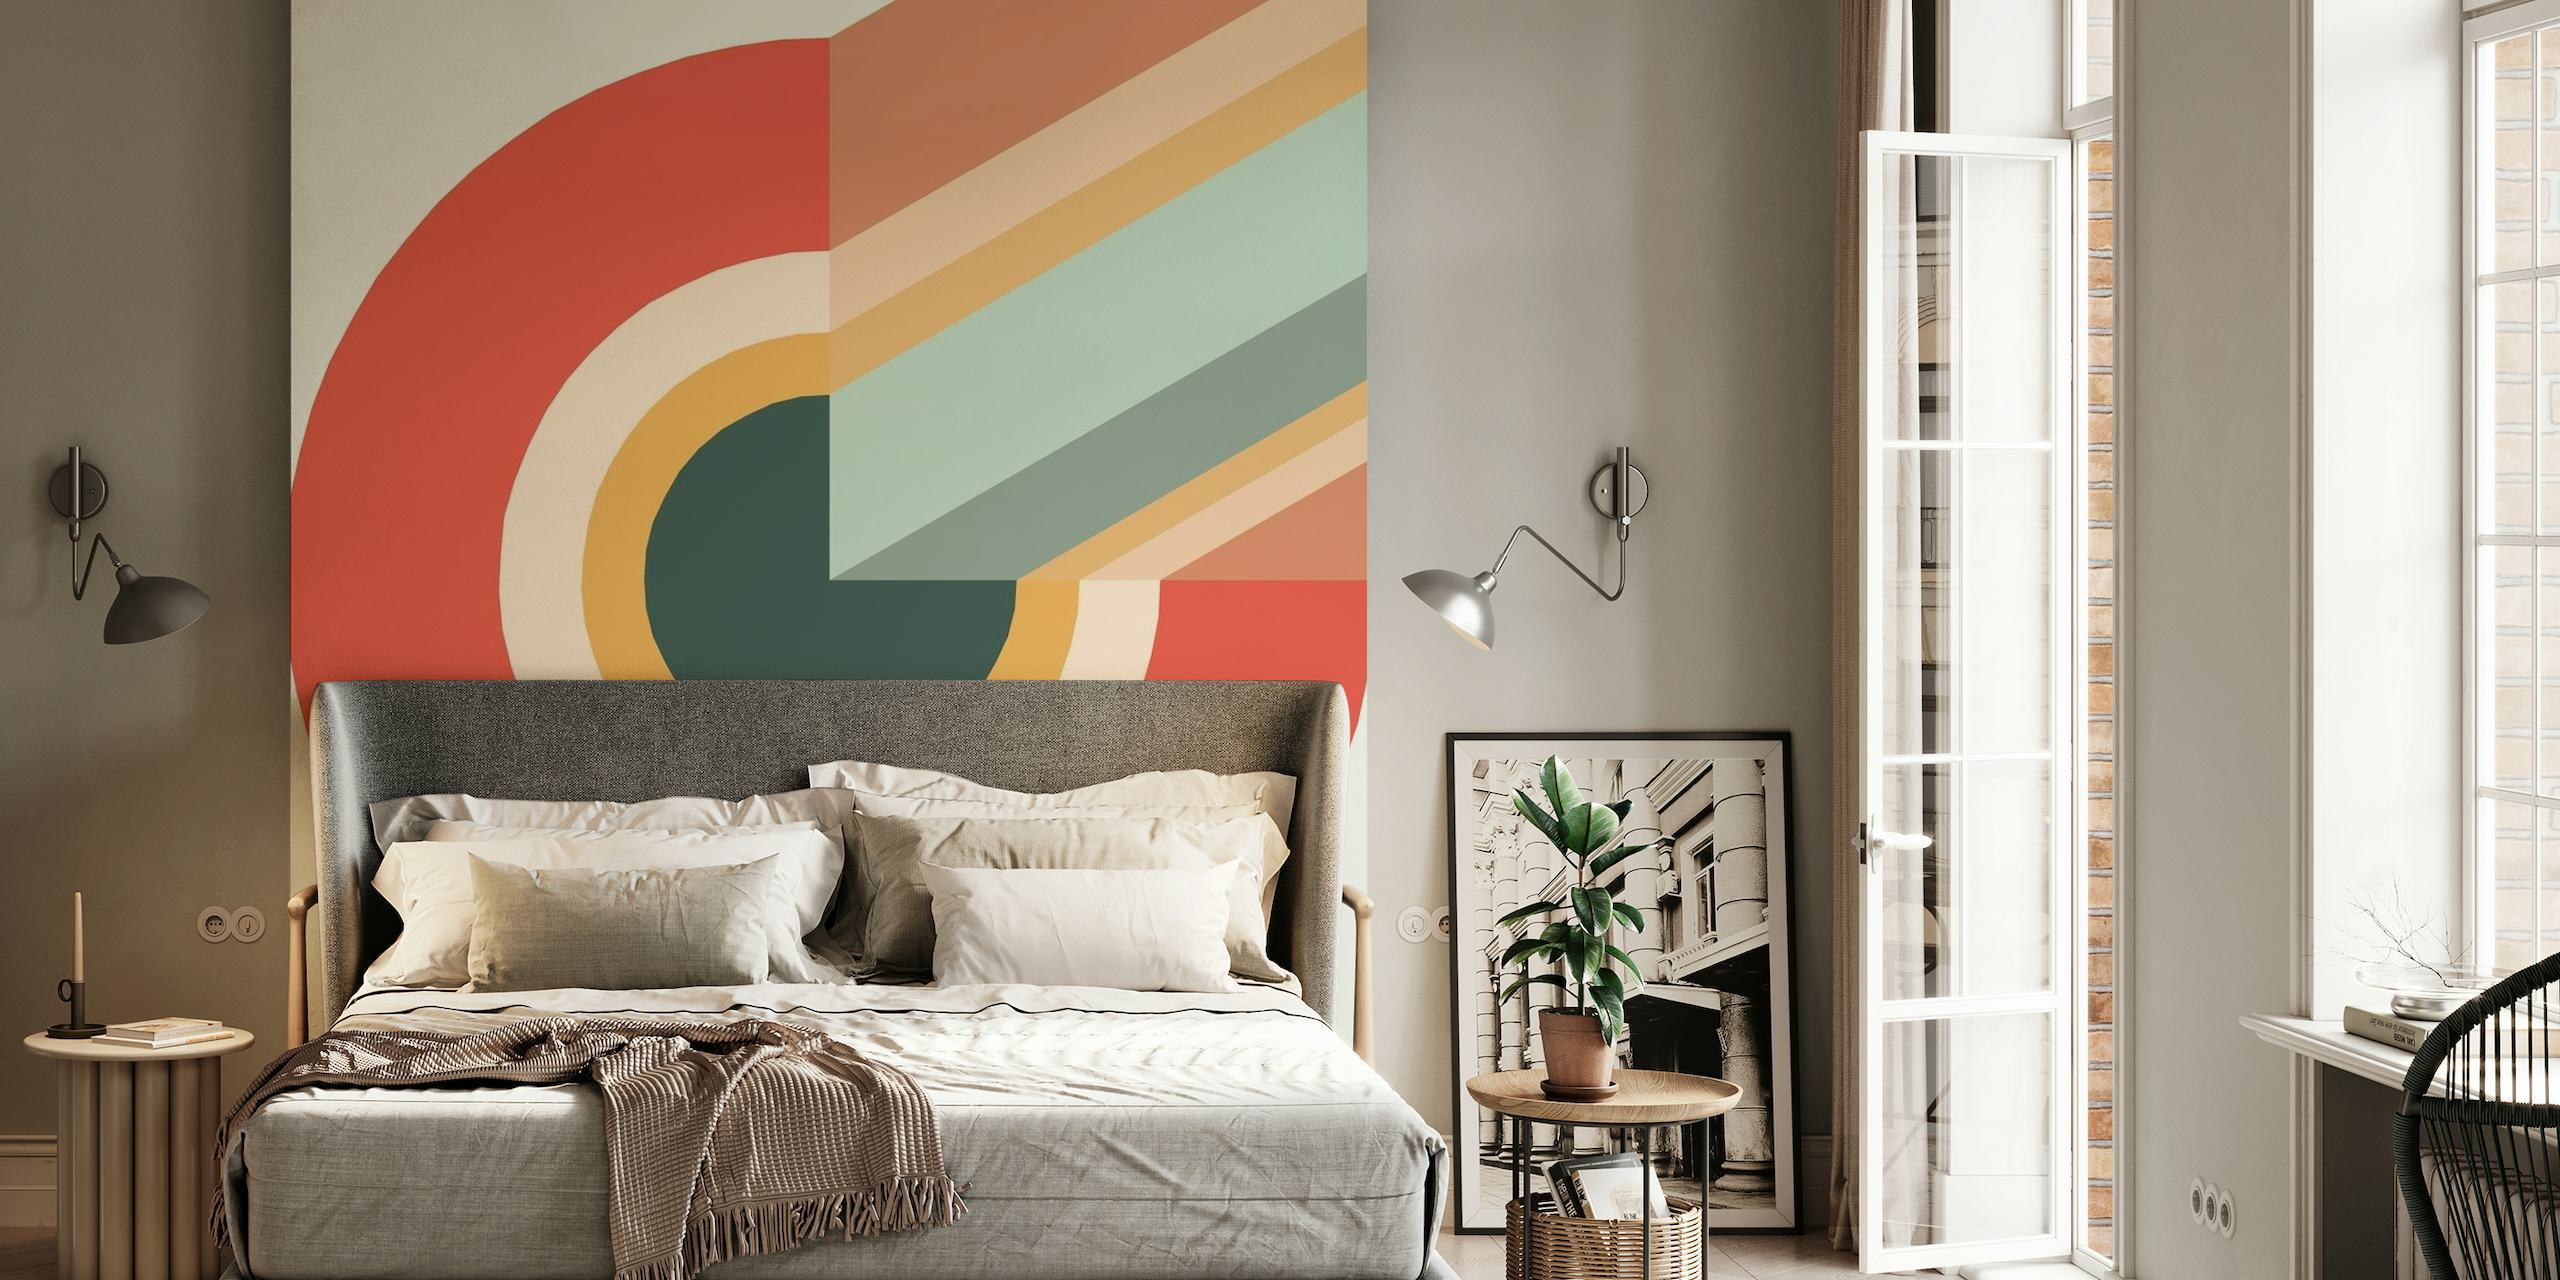 Papier peint mural abstrait avec un mélange harmonieux de couleurs chaudes et froides